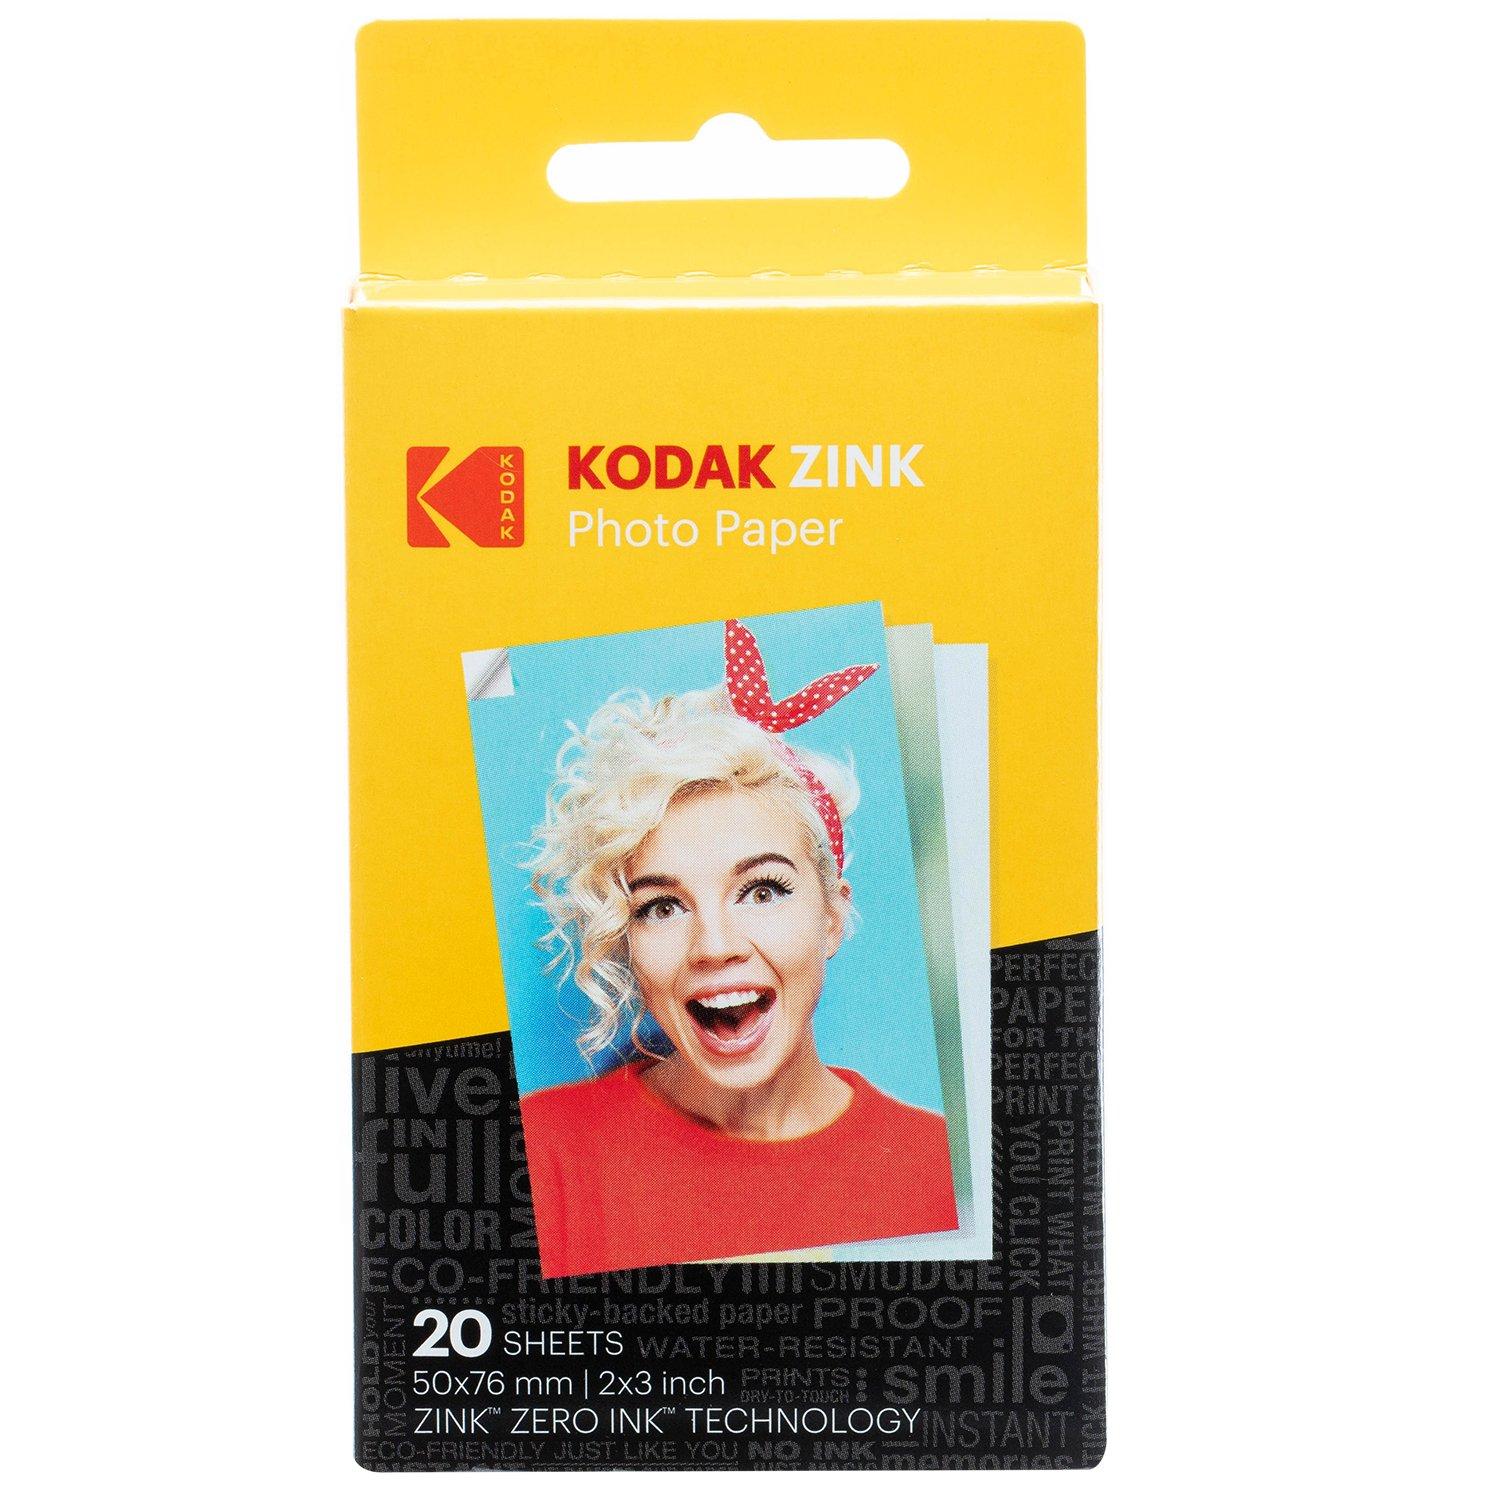 Kodak Zink Photo Paper 2x3 20-pk